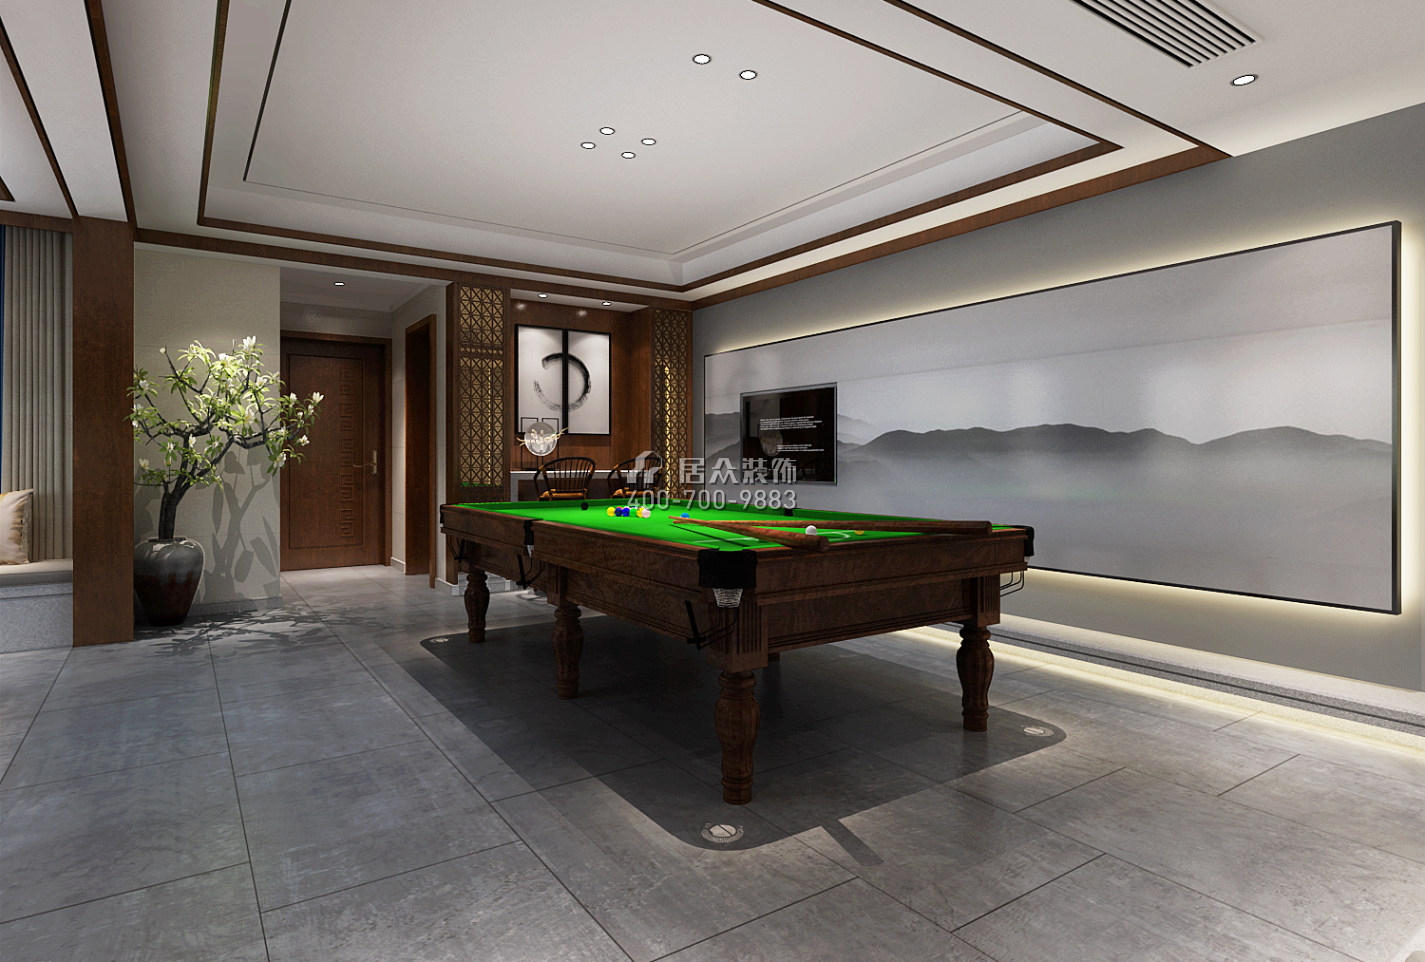 天利天鹅湾450平方米中式风格别墅户型娱乐室装修效果图